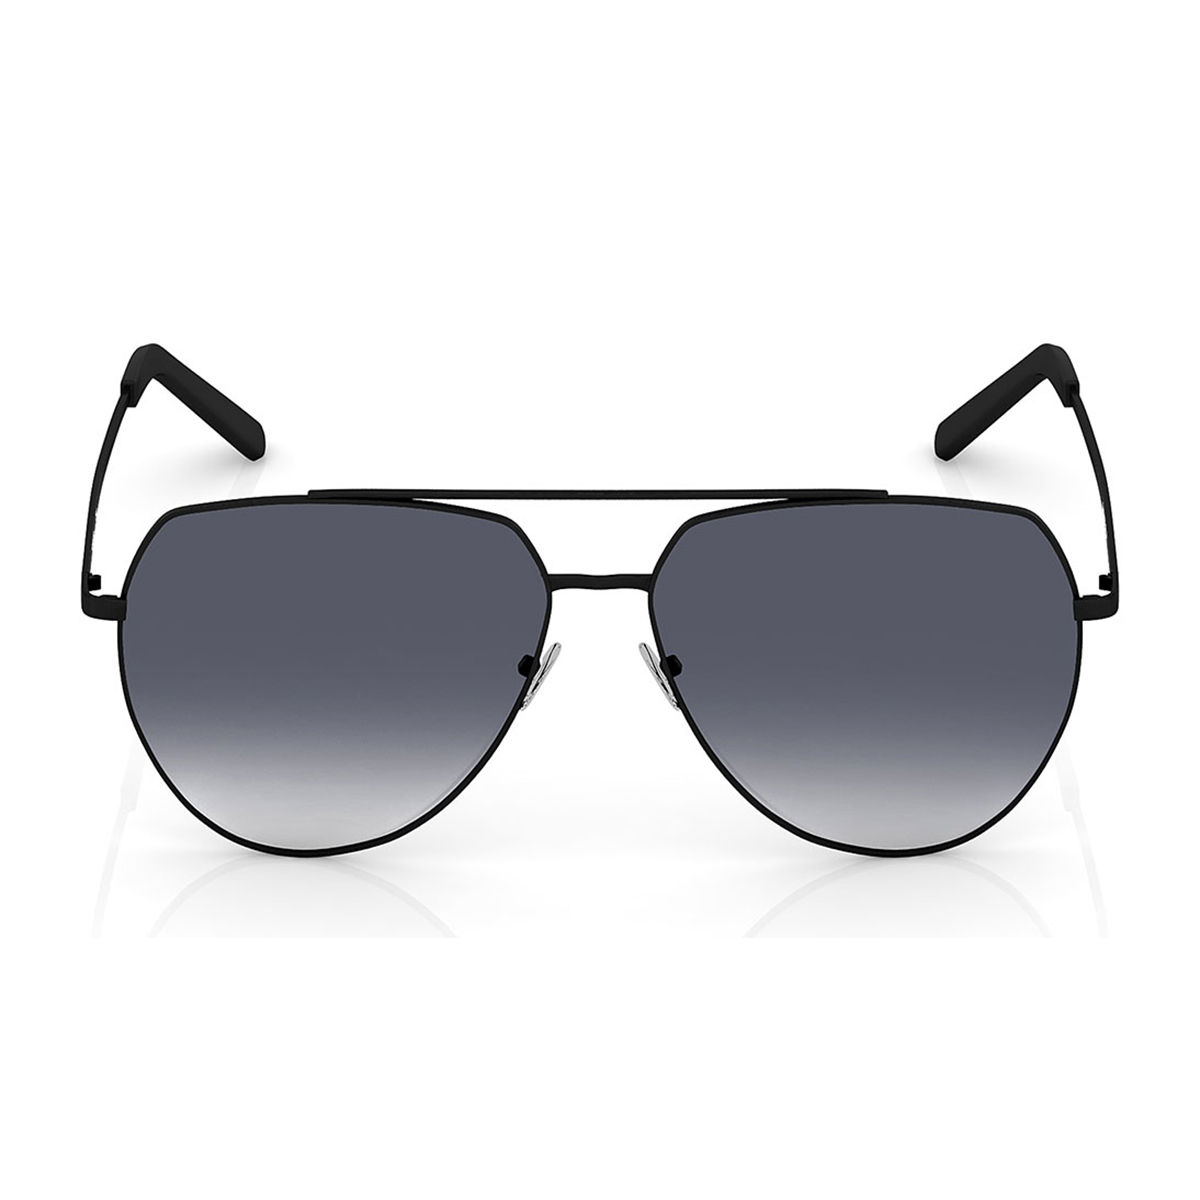 Men's & Women's Sunglasses - The Aviator - Matte Black | Vincero Collective